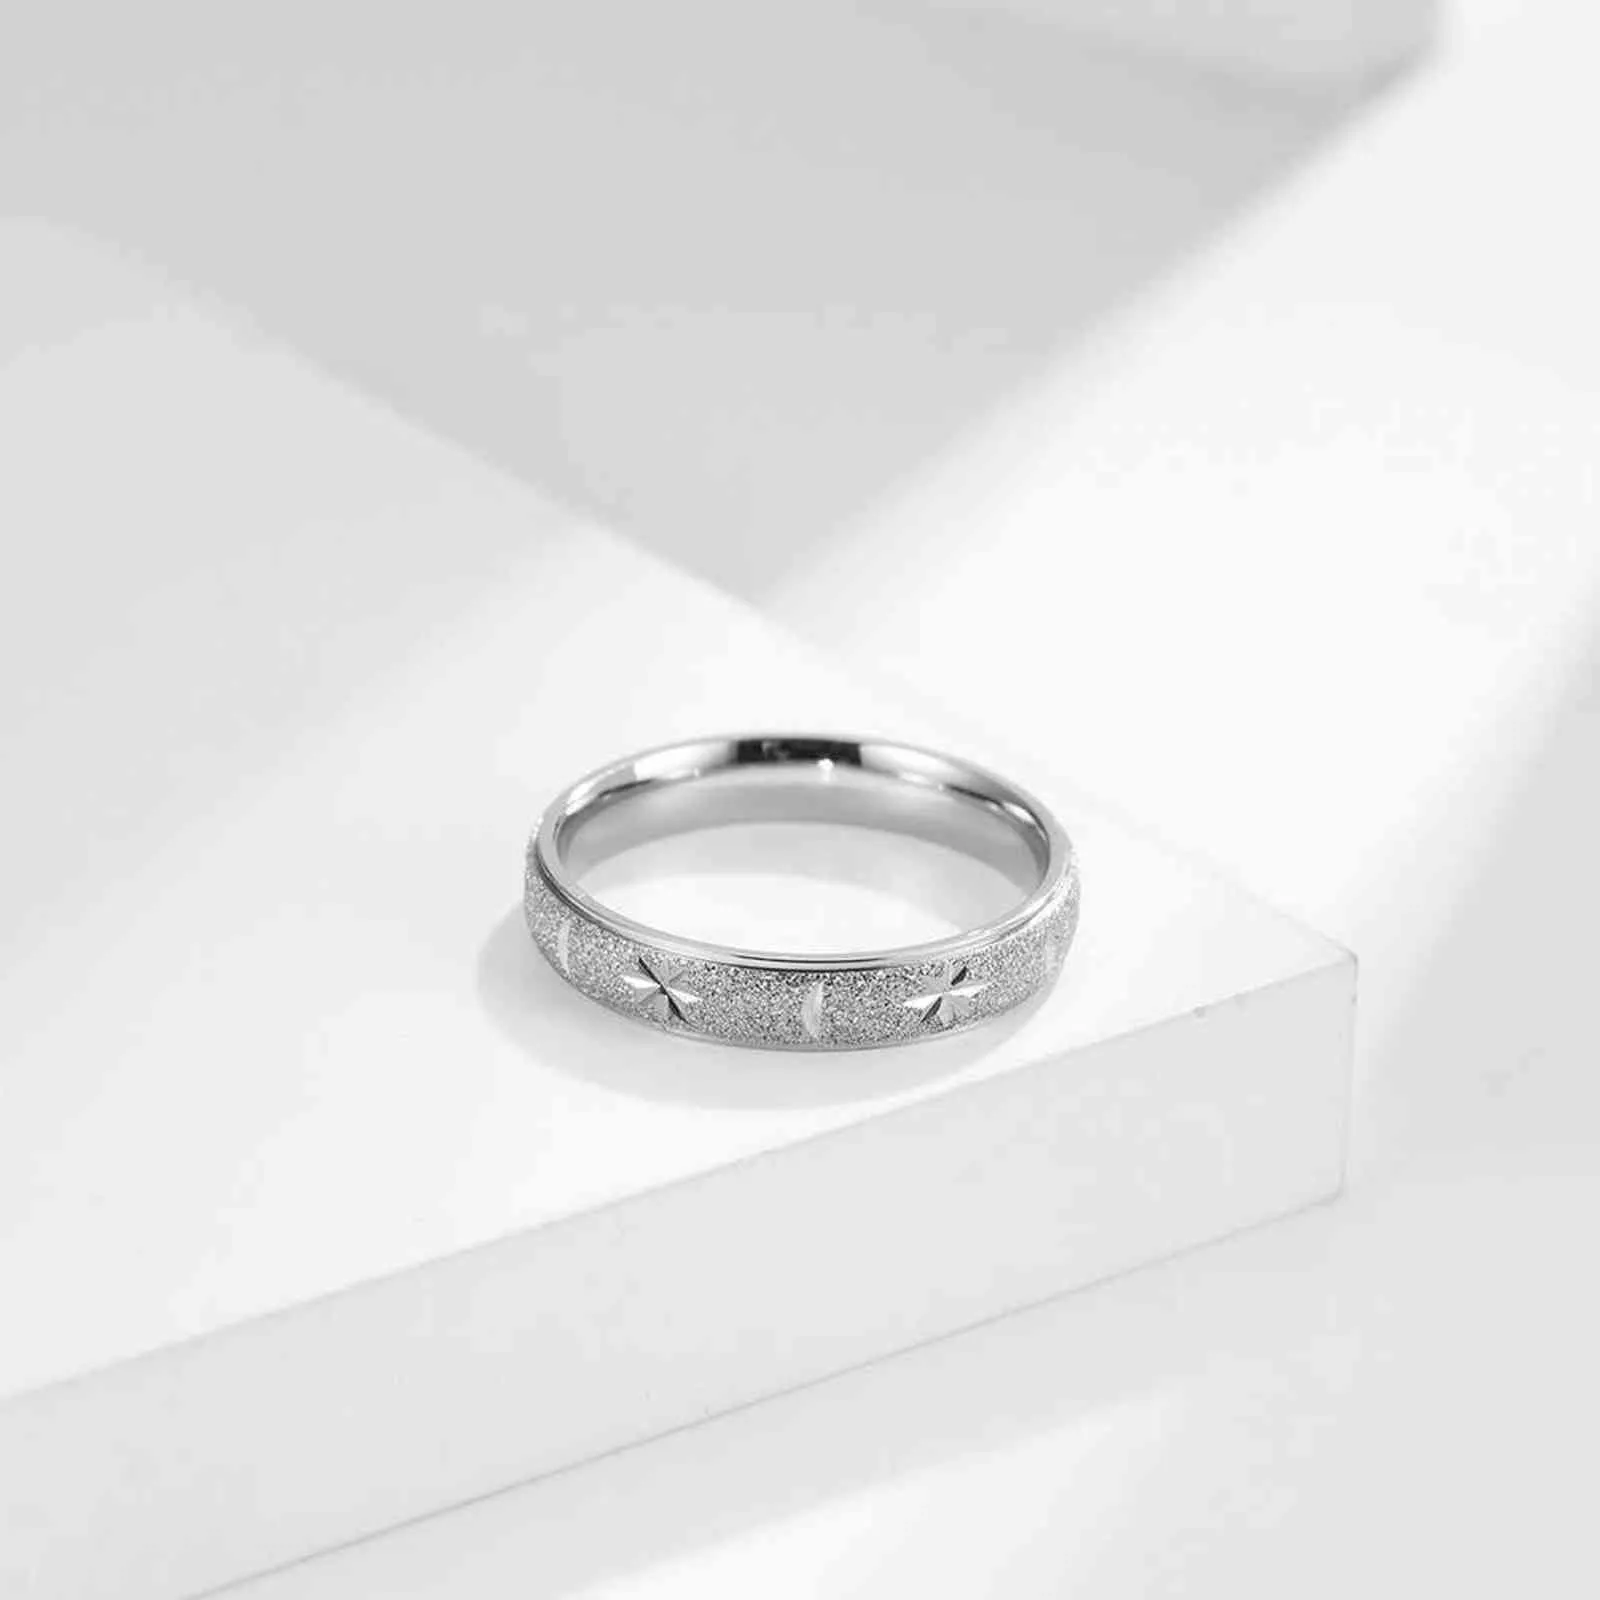 4mmファッションシンプルなスタームーンシェイプの指輪のためのシンプルな指輪ミニマリストの曇らしカップルリングロマンチックな婚約ジュエリーG1125